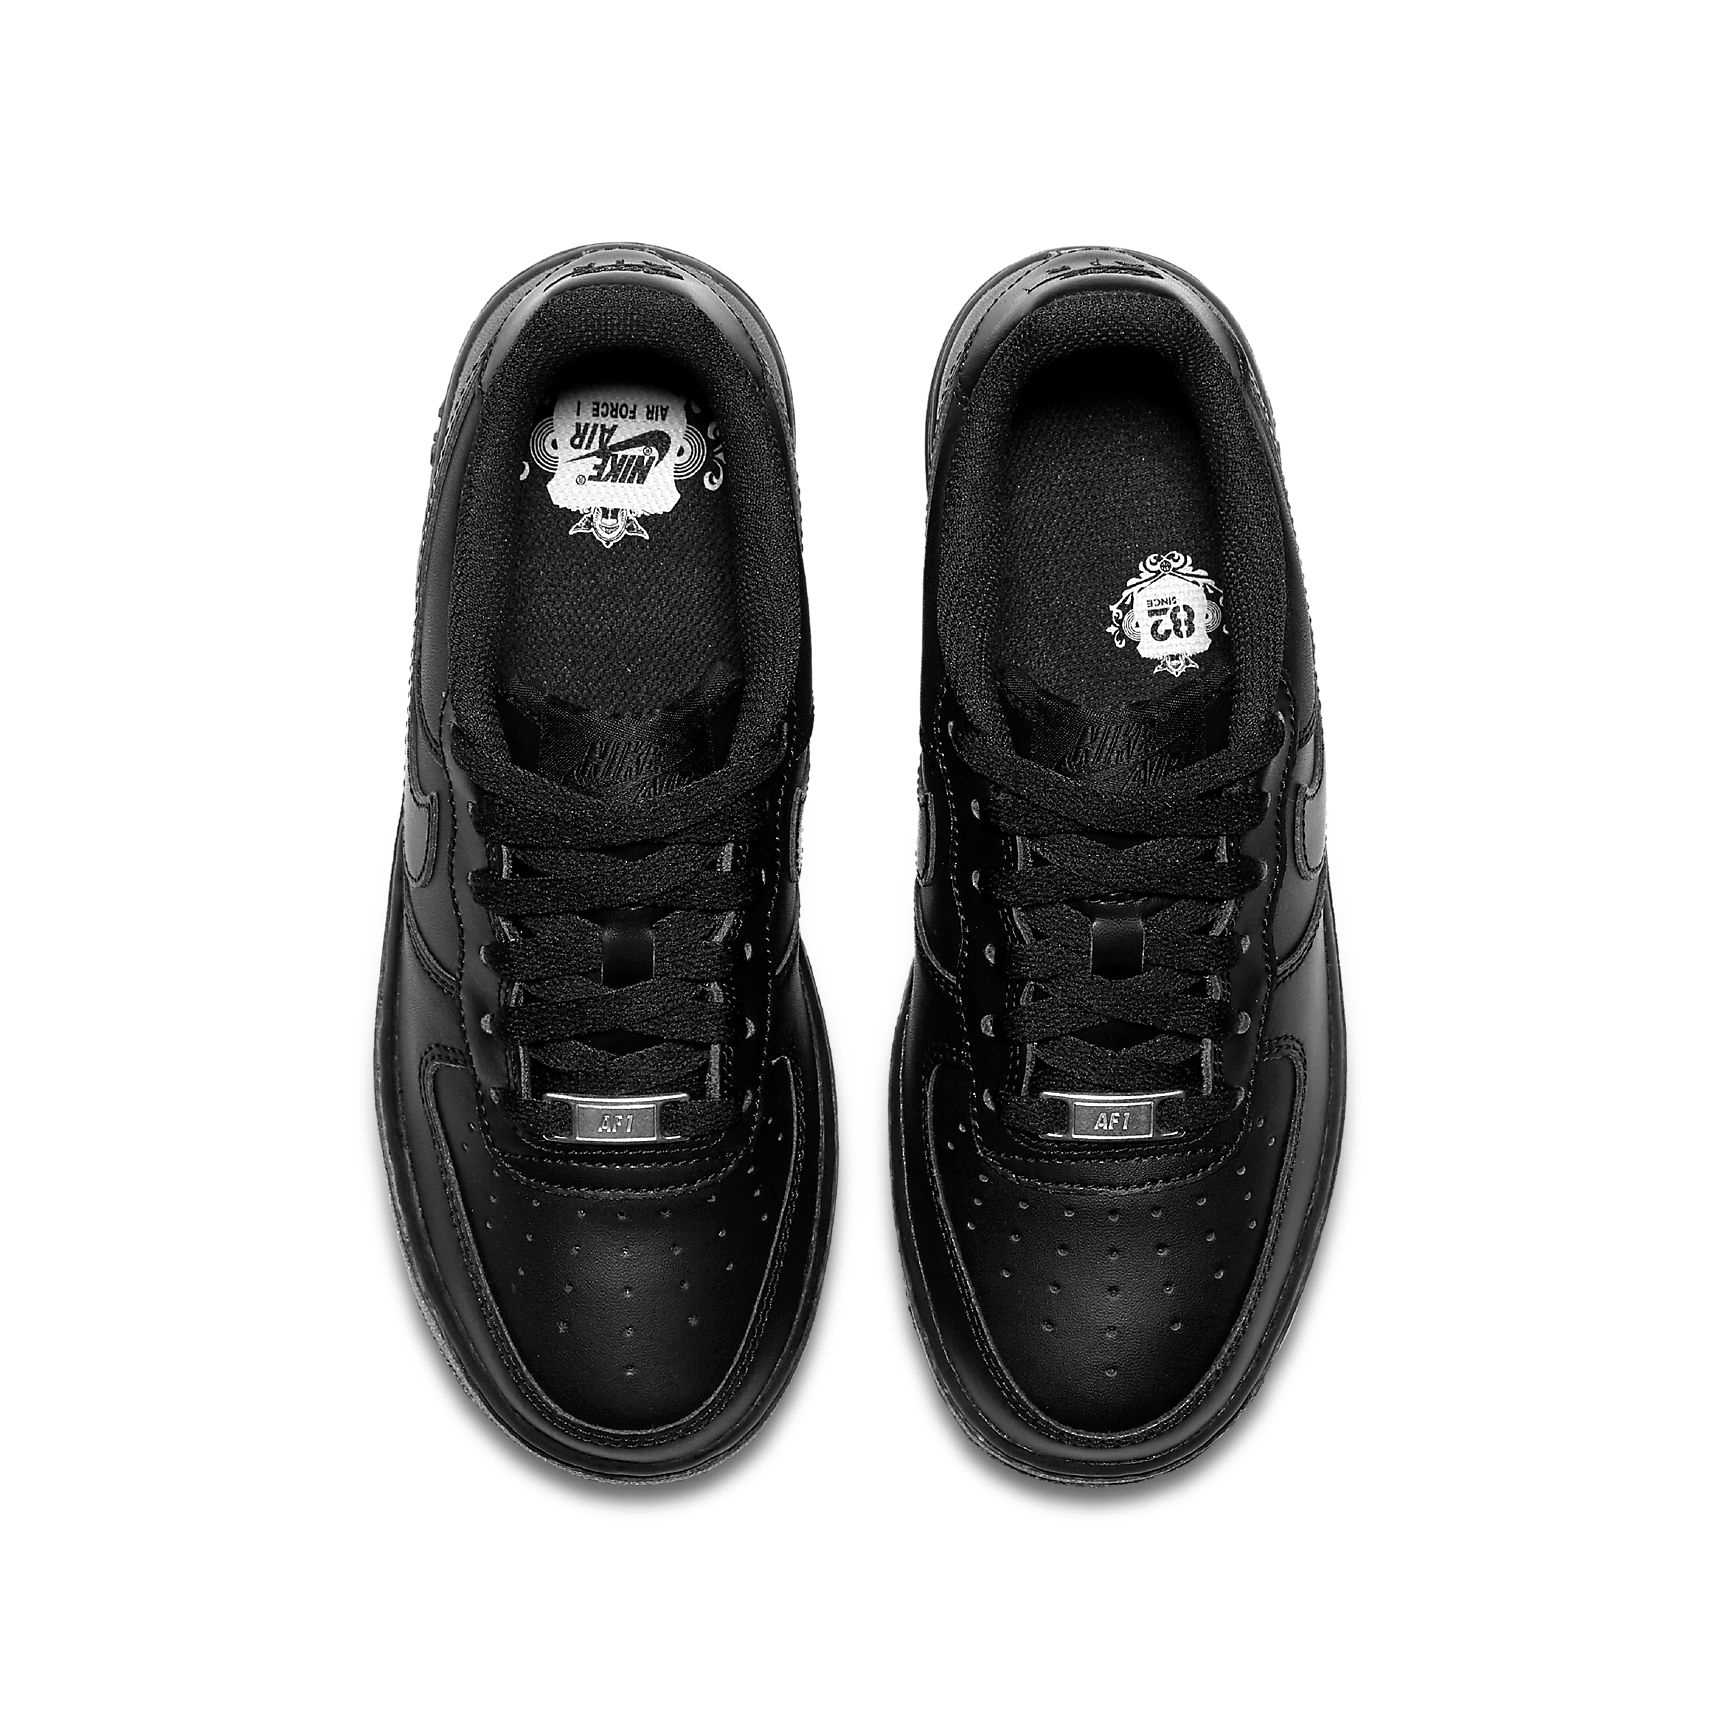 Nike Air Force 1 07 Black